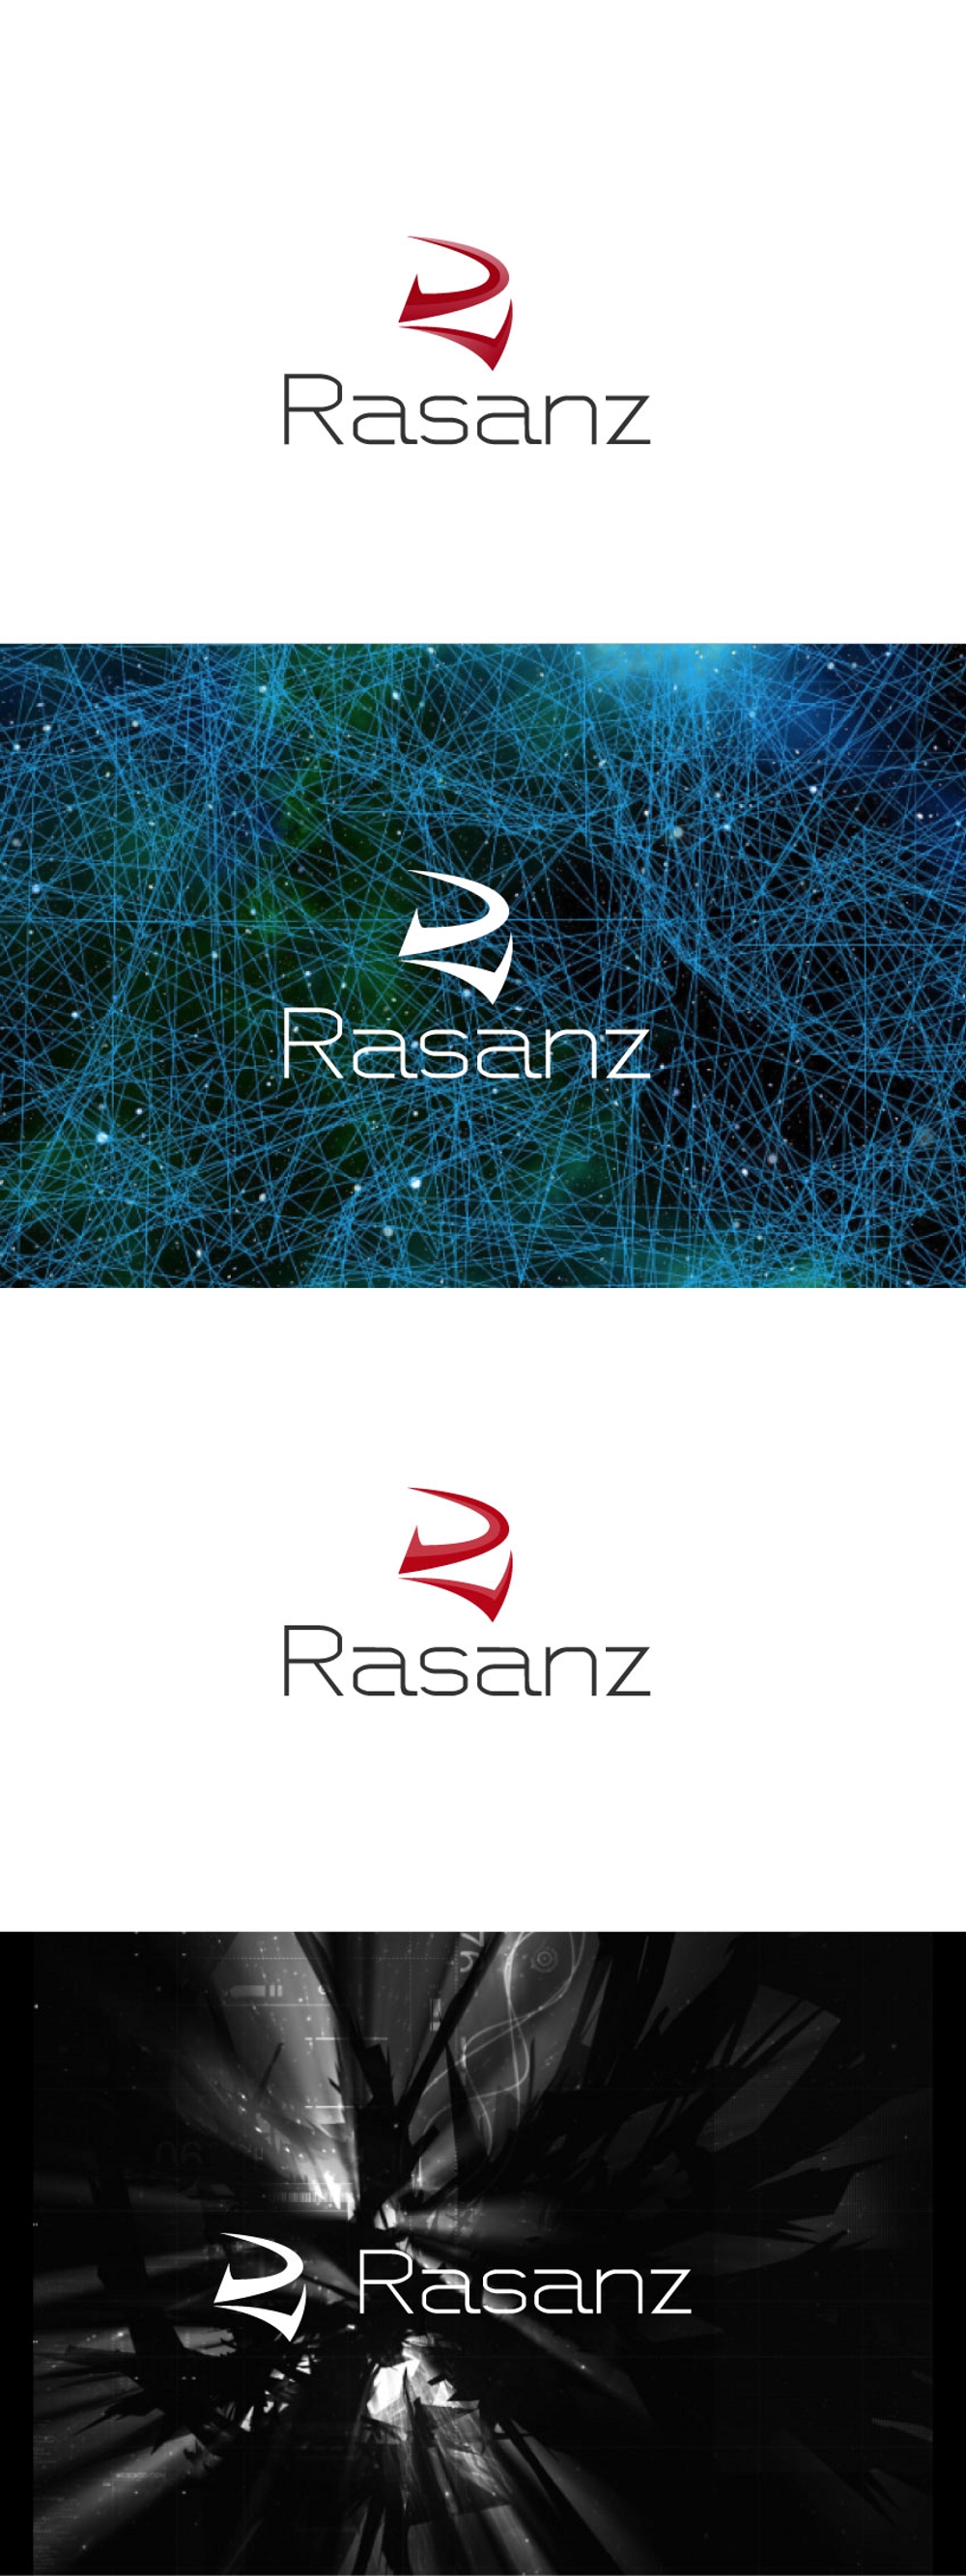 Rasanz-02.jpg